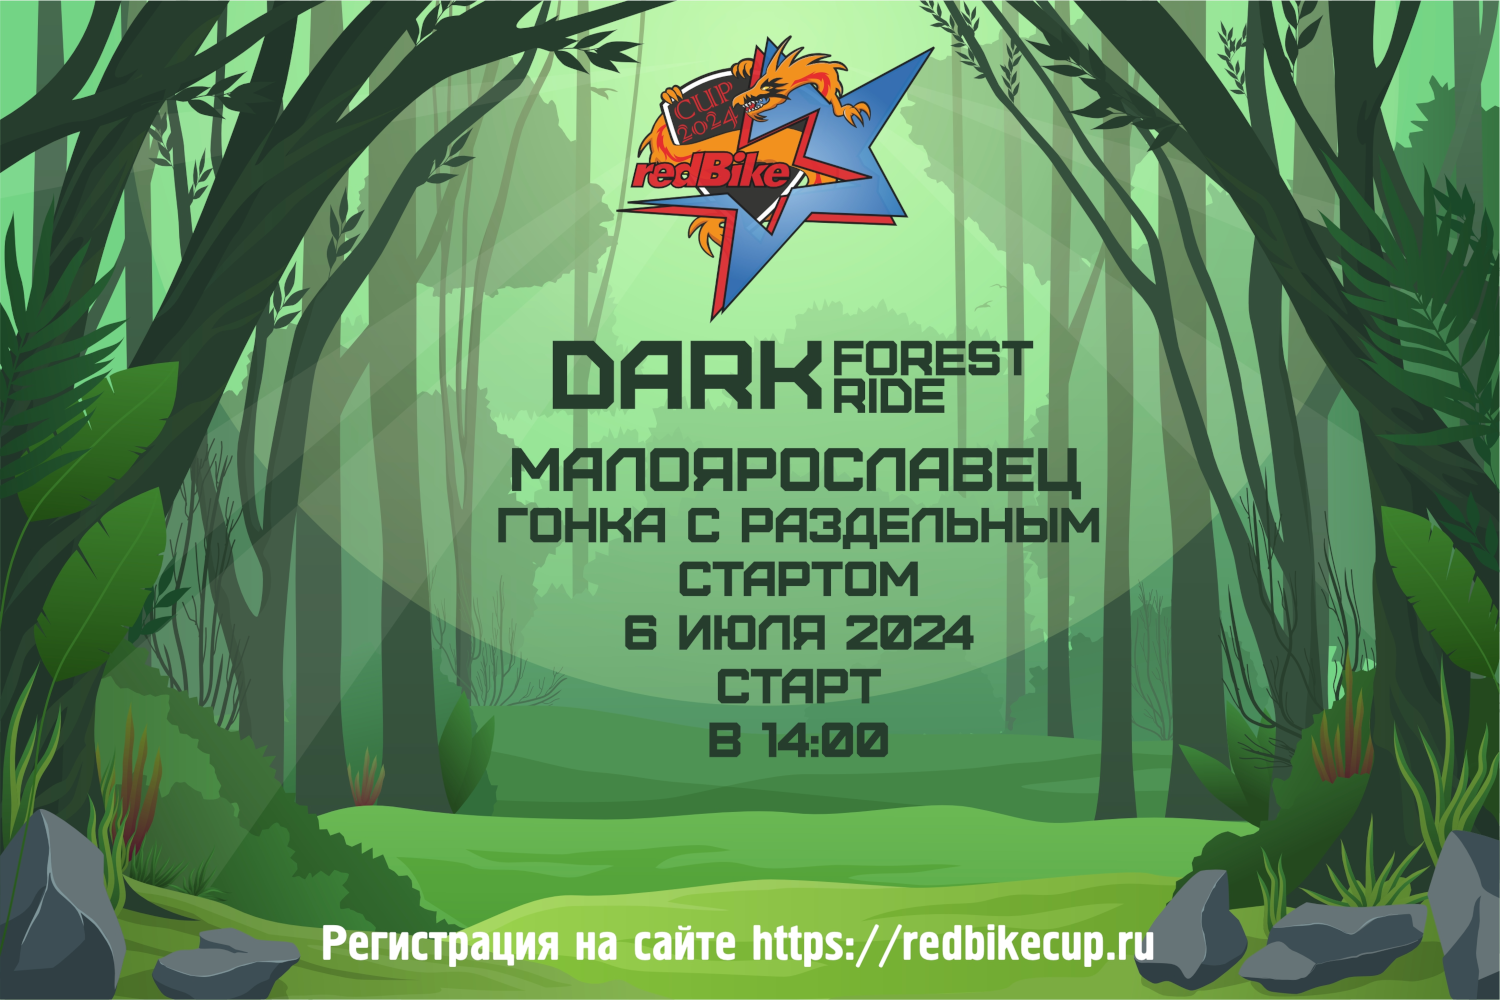 redBike cup #4 2024 6 июля, “Dark Forest Ride” Калужская область, г. Малоярославец